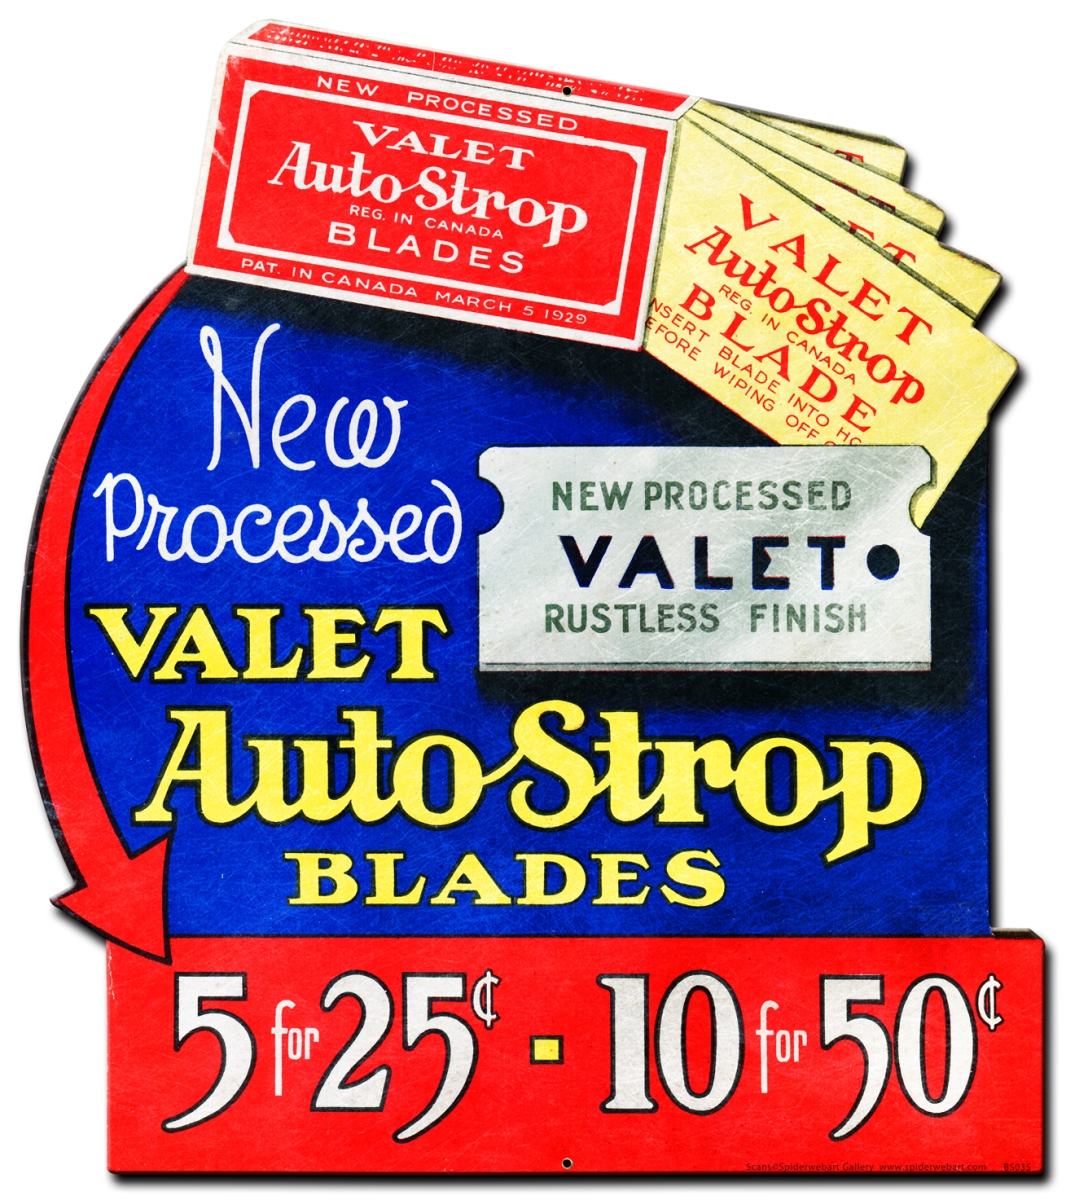 Barber Shop & Shoe Shine Memories Bs035 15 X 20 In. Auto Strop Plasma Metal Sign